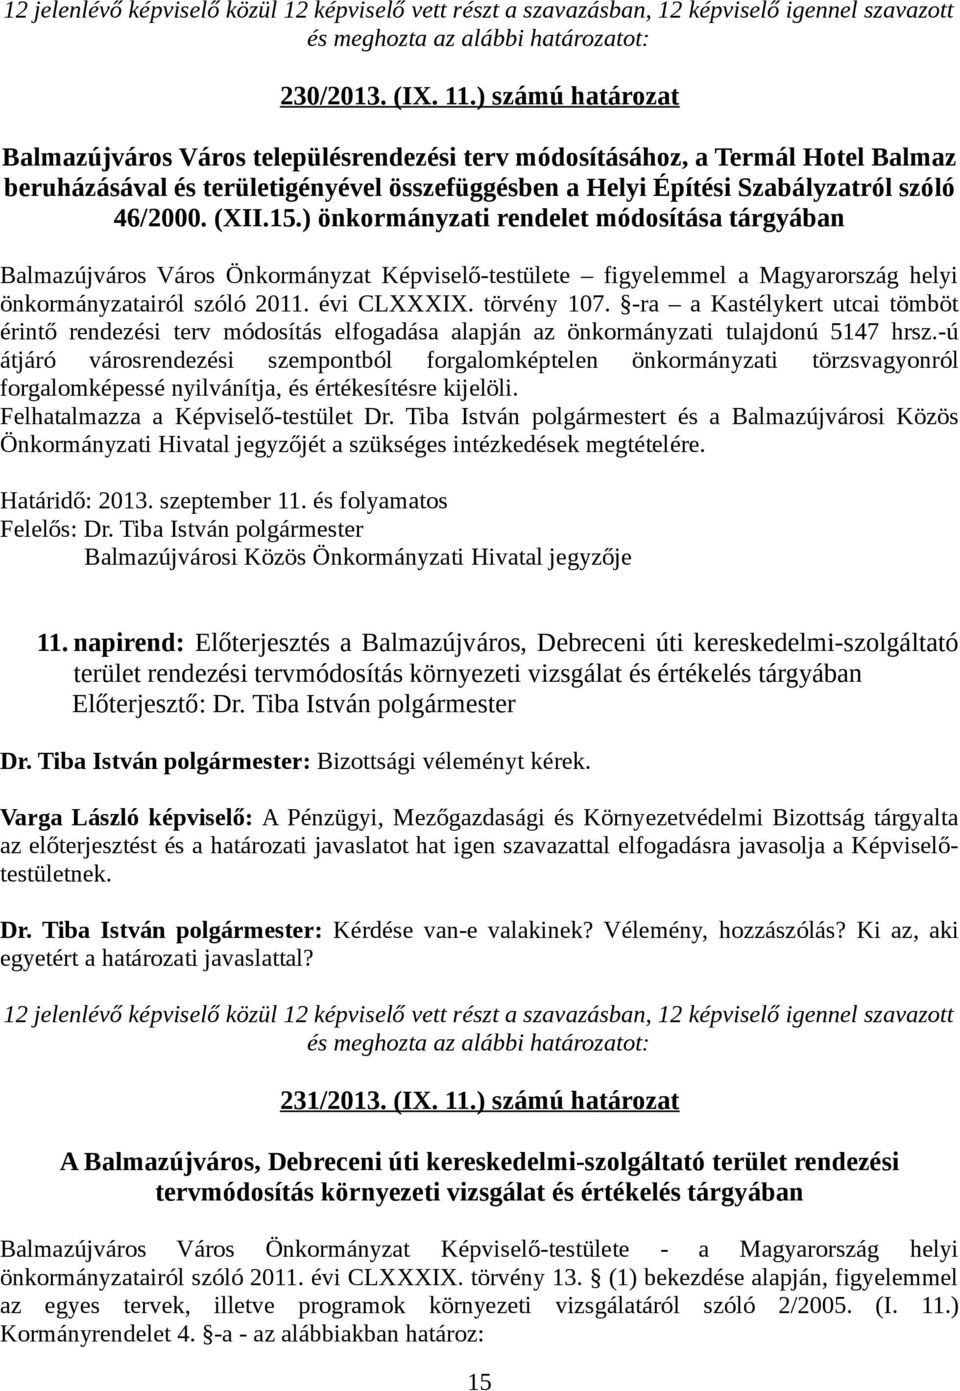 15.) önkormányzati rendelet módosítása tárgyában Balmazújváros Város Önkormányzat Képviselő-testülete figyelemmel a Magyarország helyi önkormányzatairól szóló 2011. évi CLXXXIX. törvény 107.